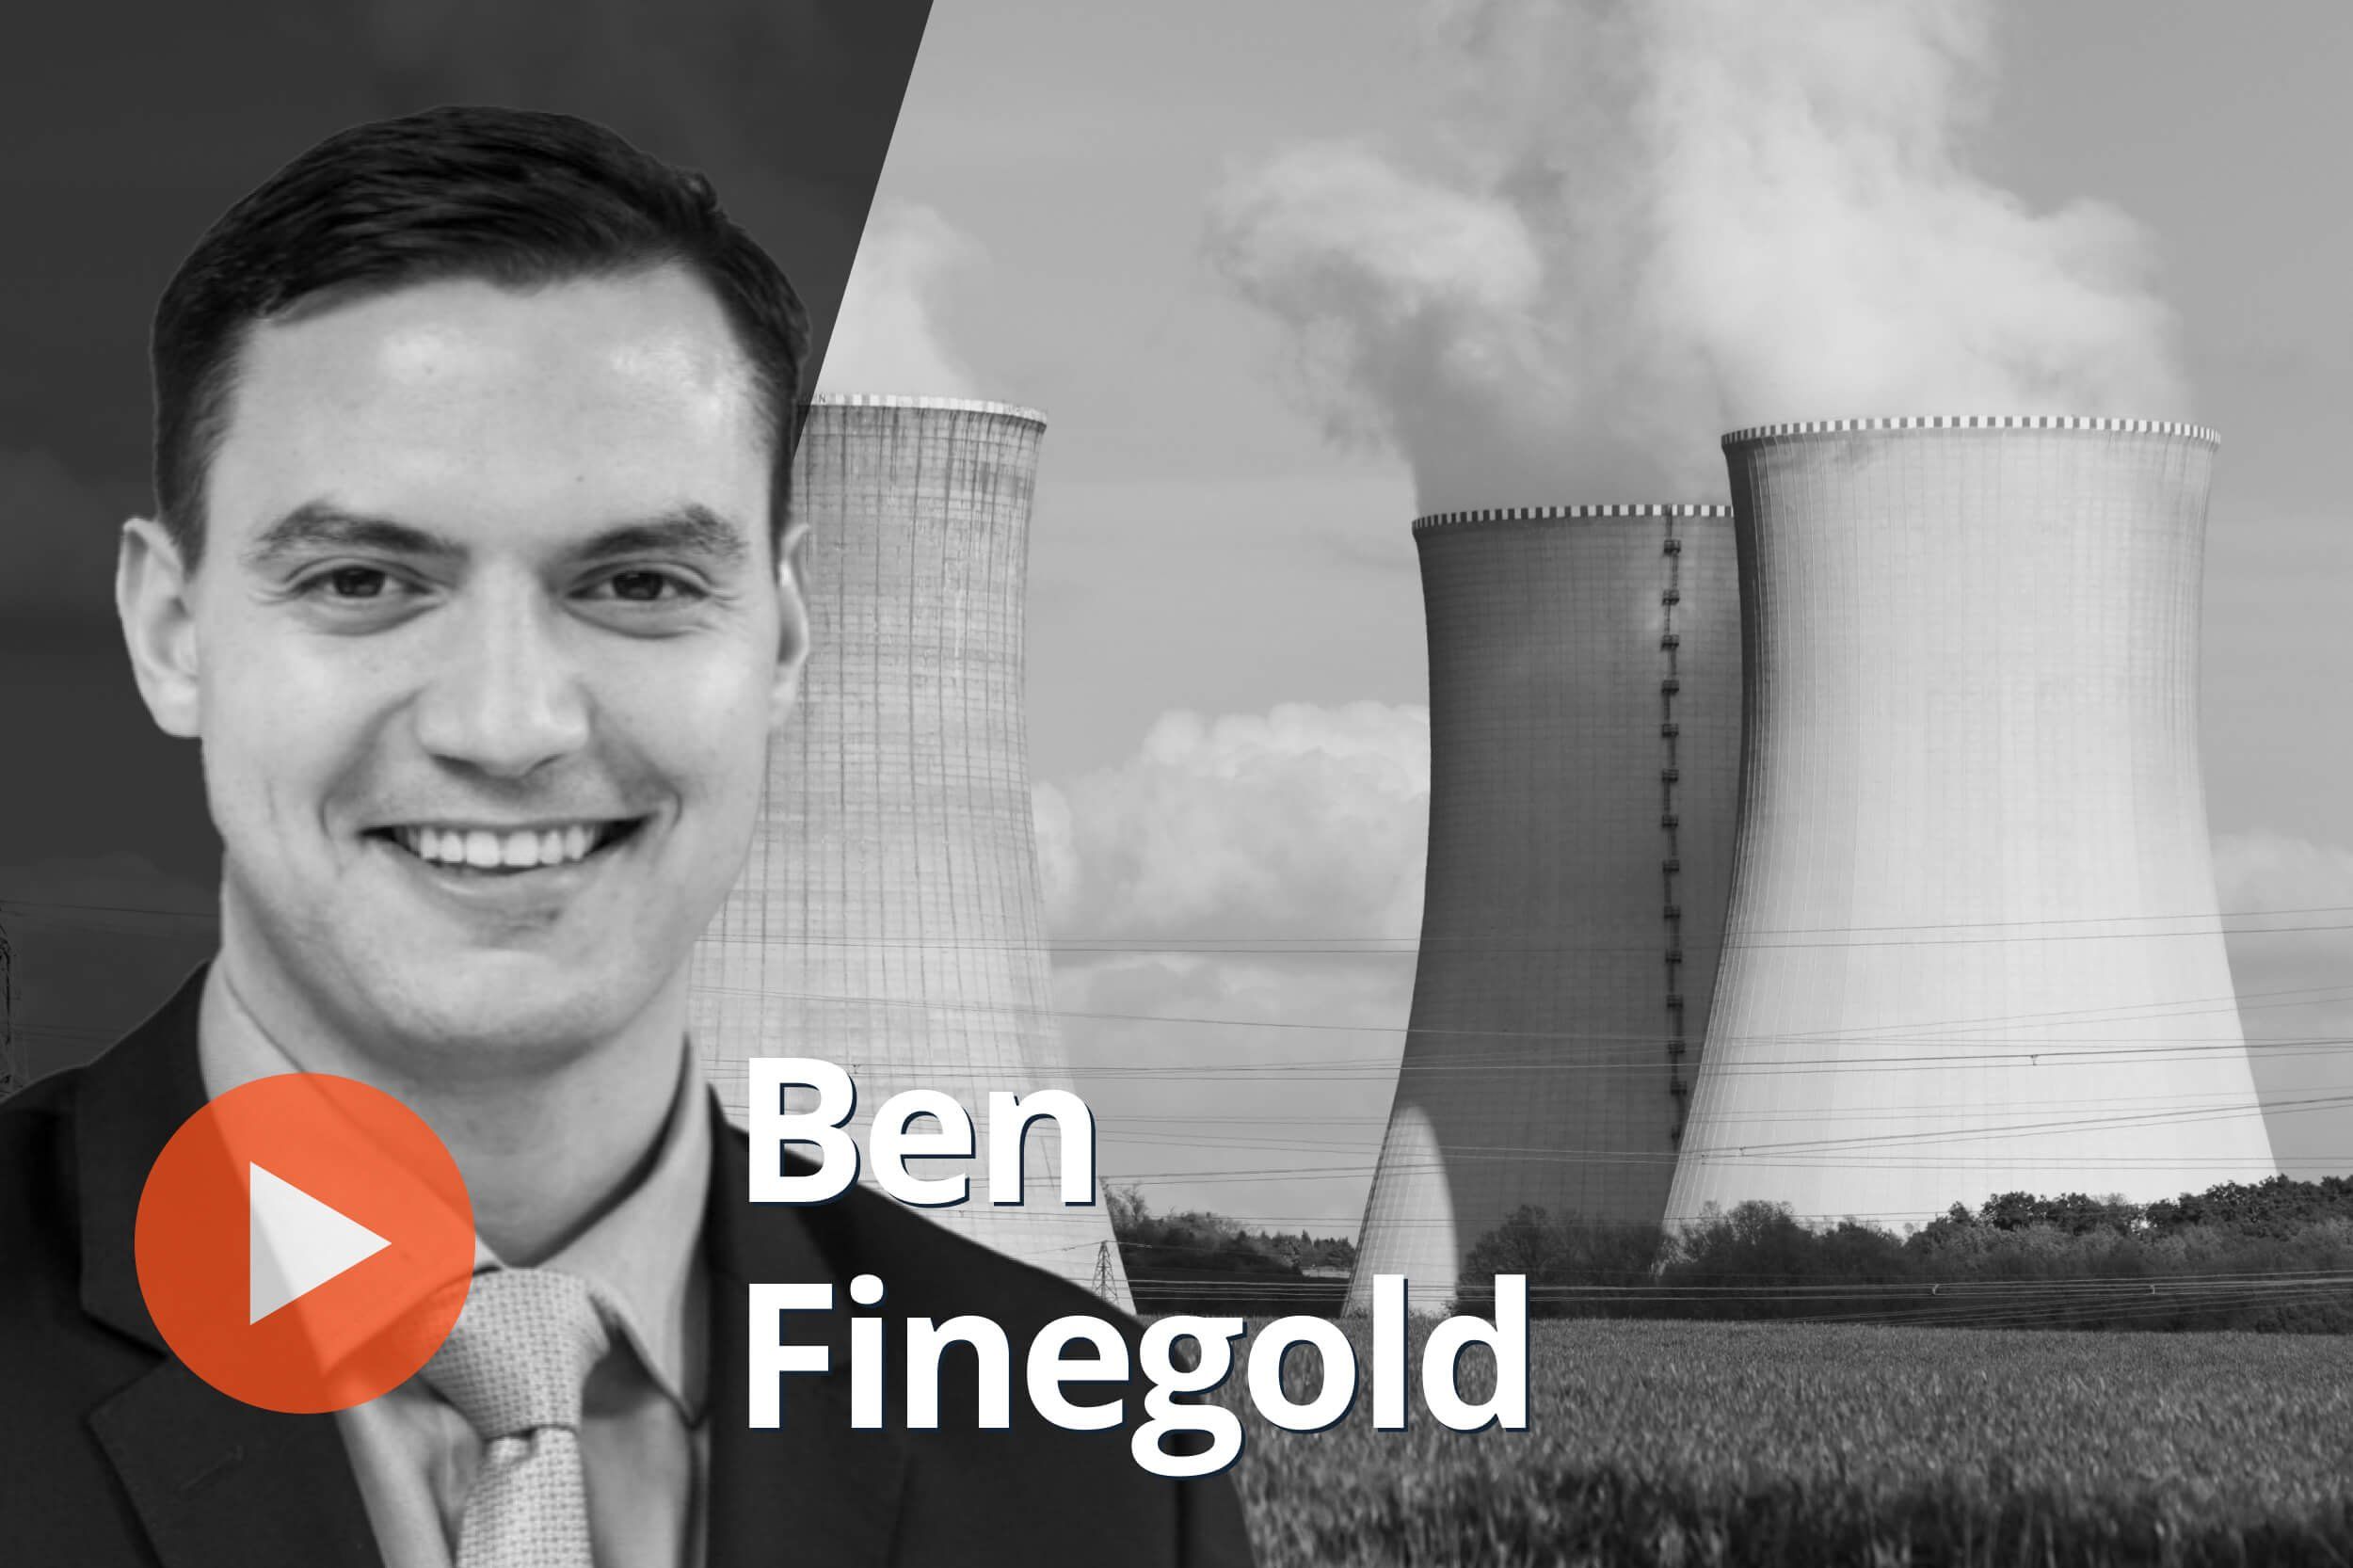 Ben Finegold, nuclear reactors. 